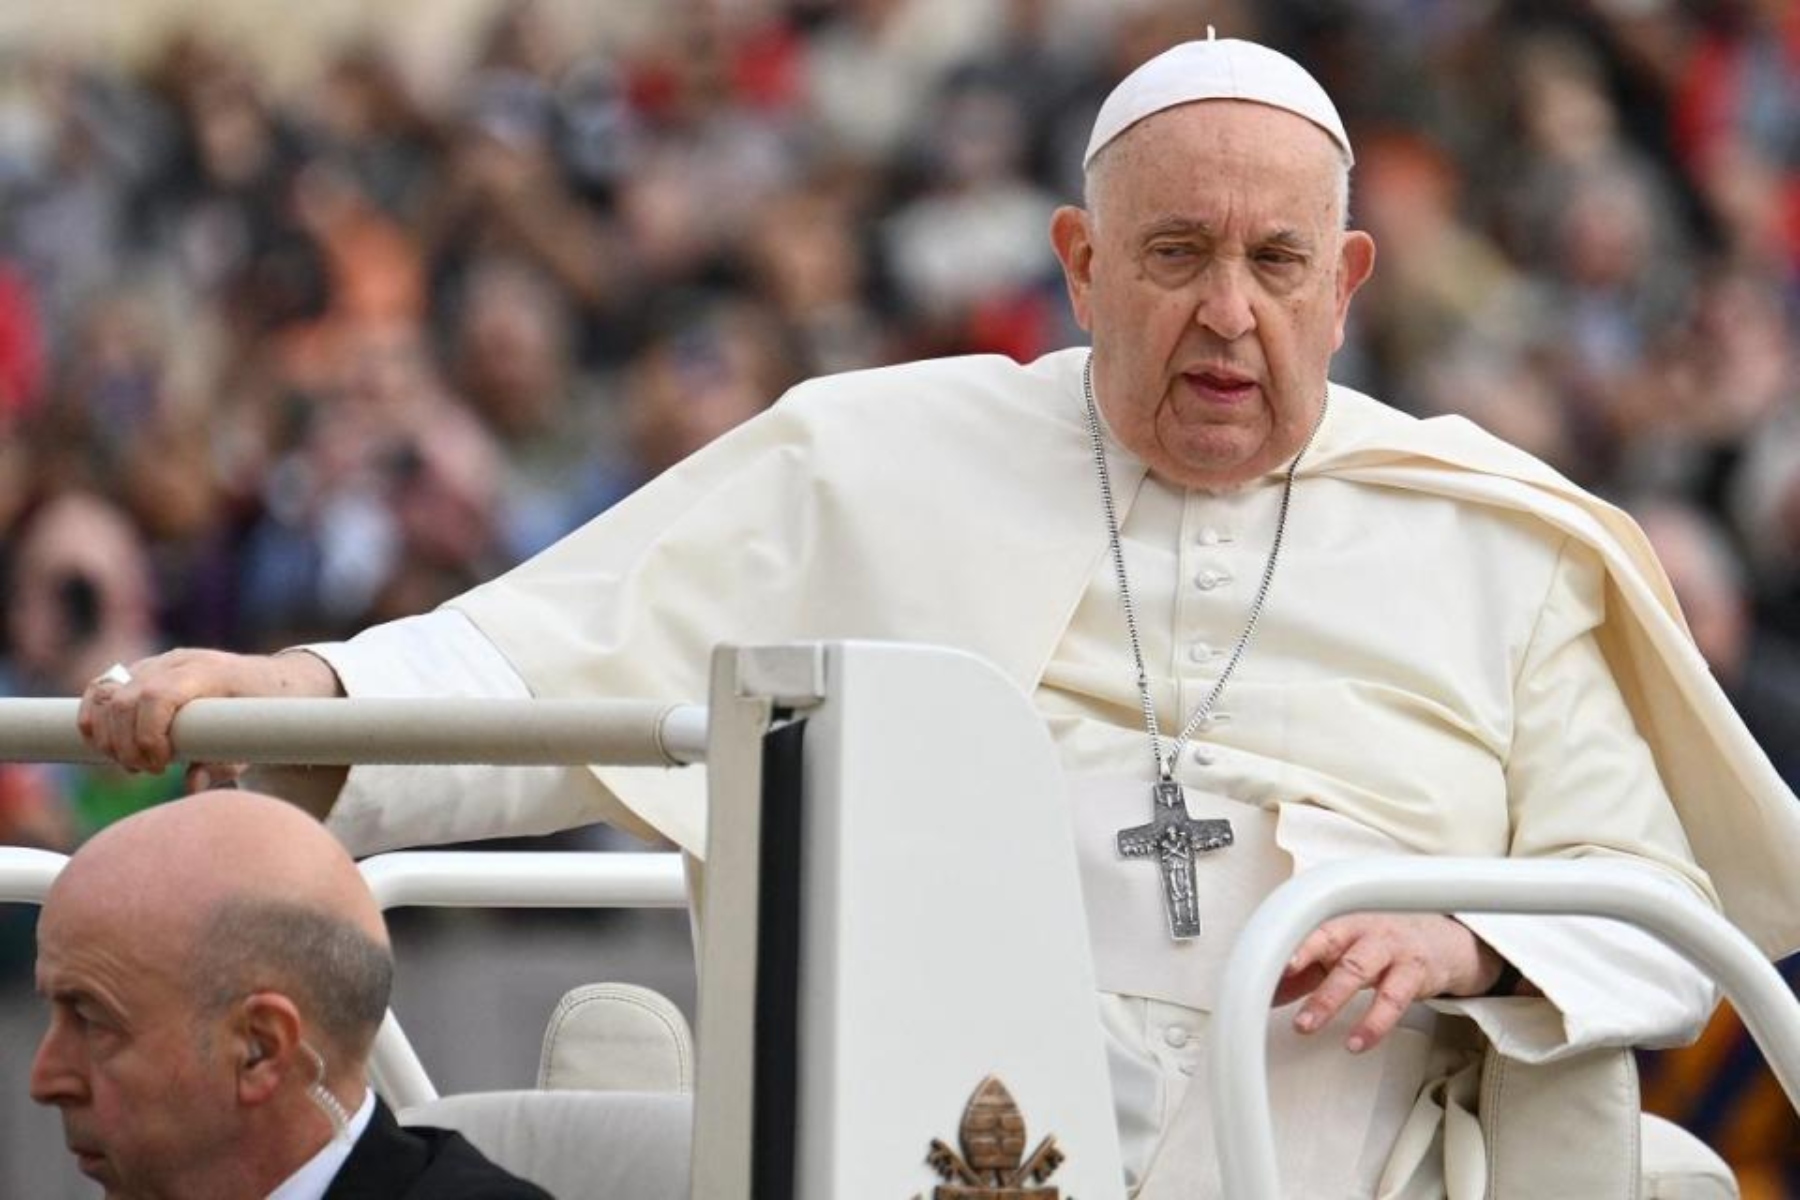 Ο Πάπας Φραγκίσκος ακυρώνει συναντήσεις λόγω εποχικής γρίπης